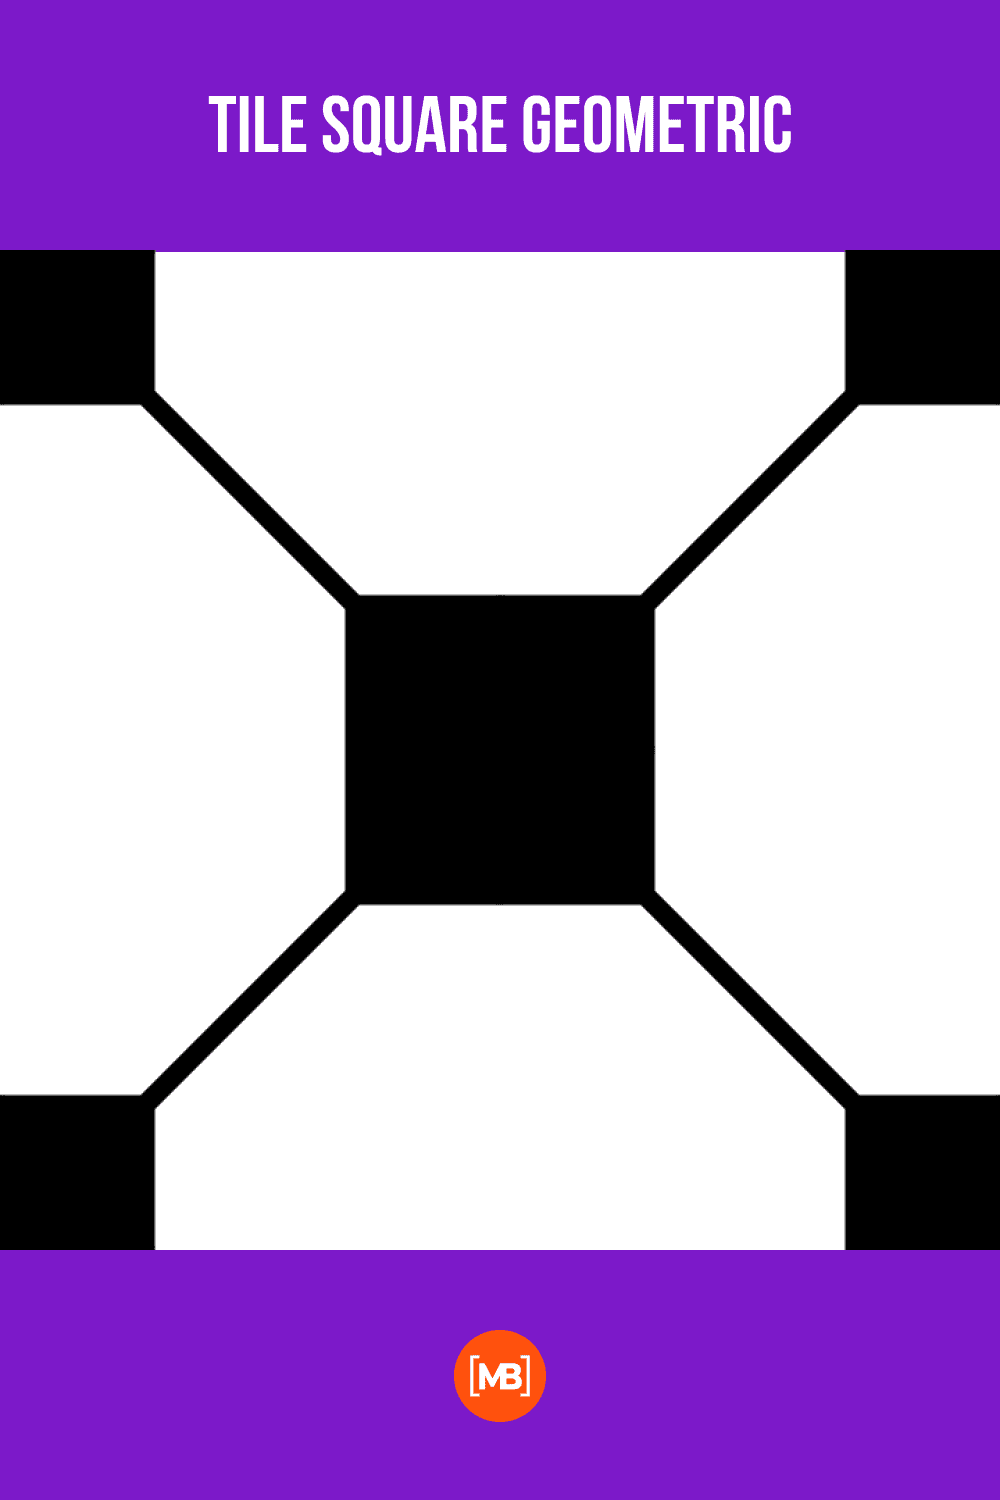 Tile square geometric.